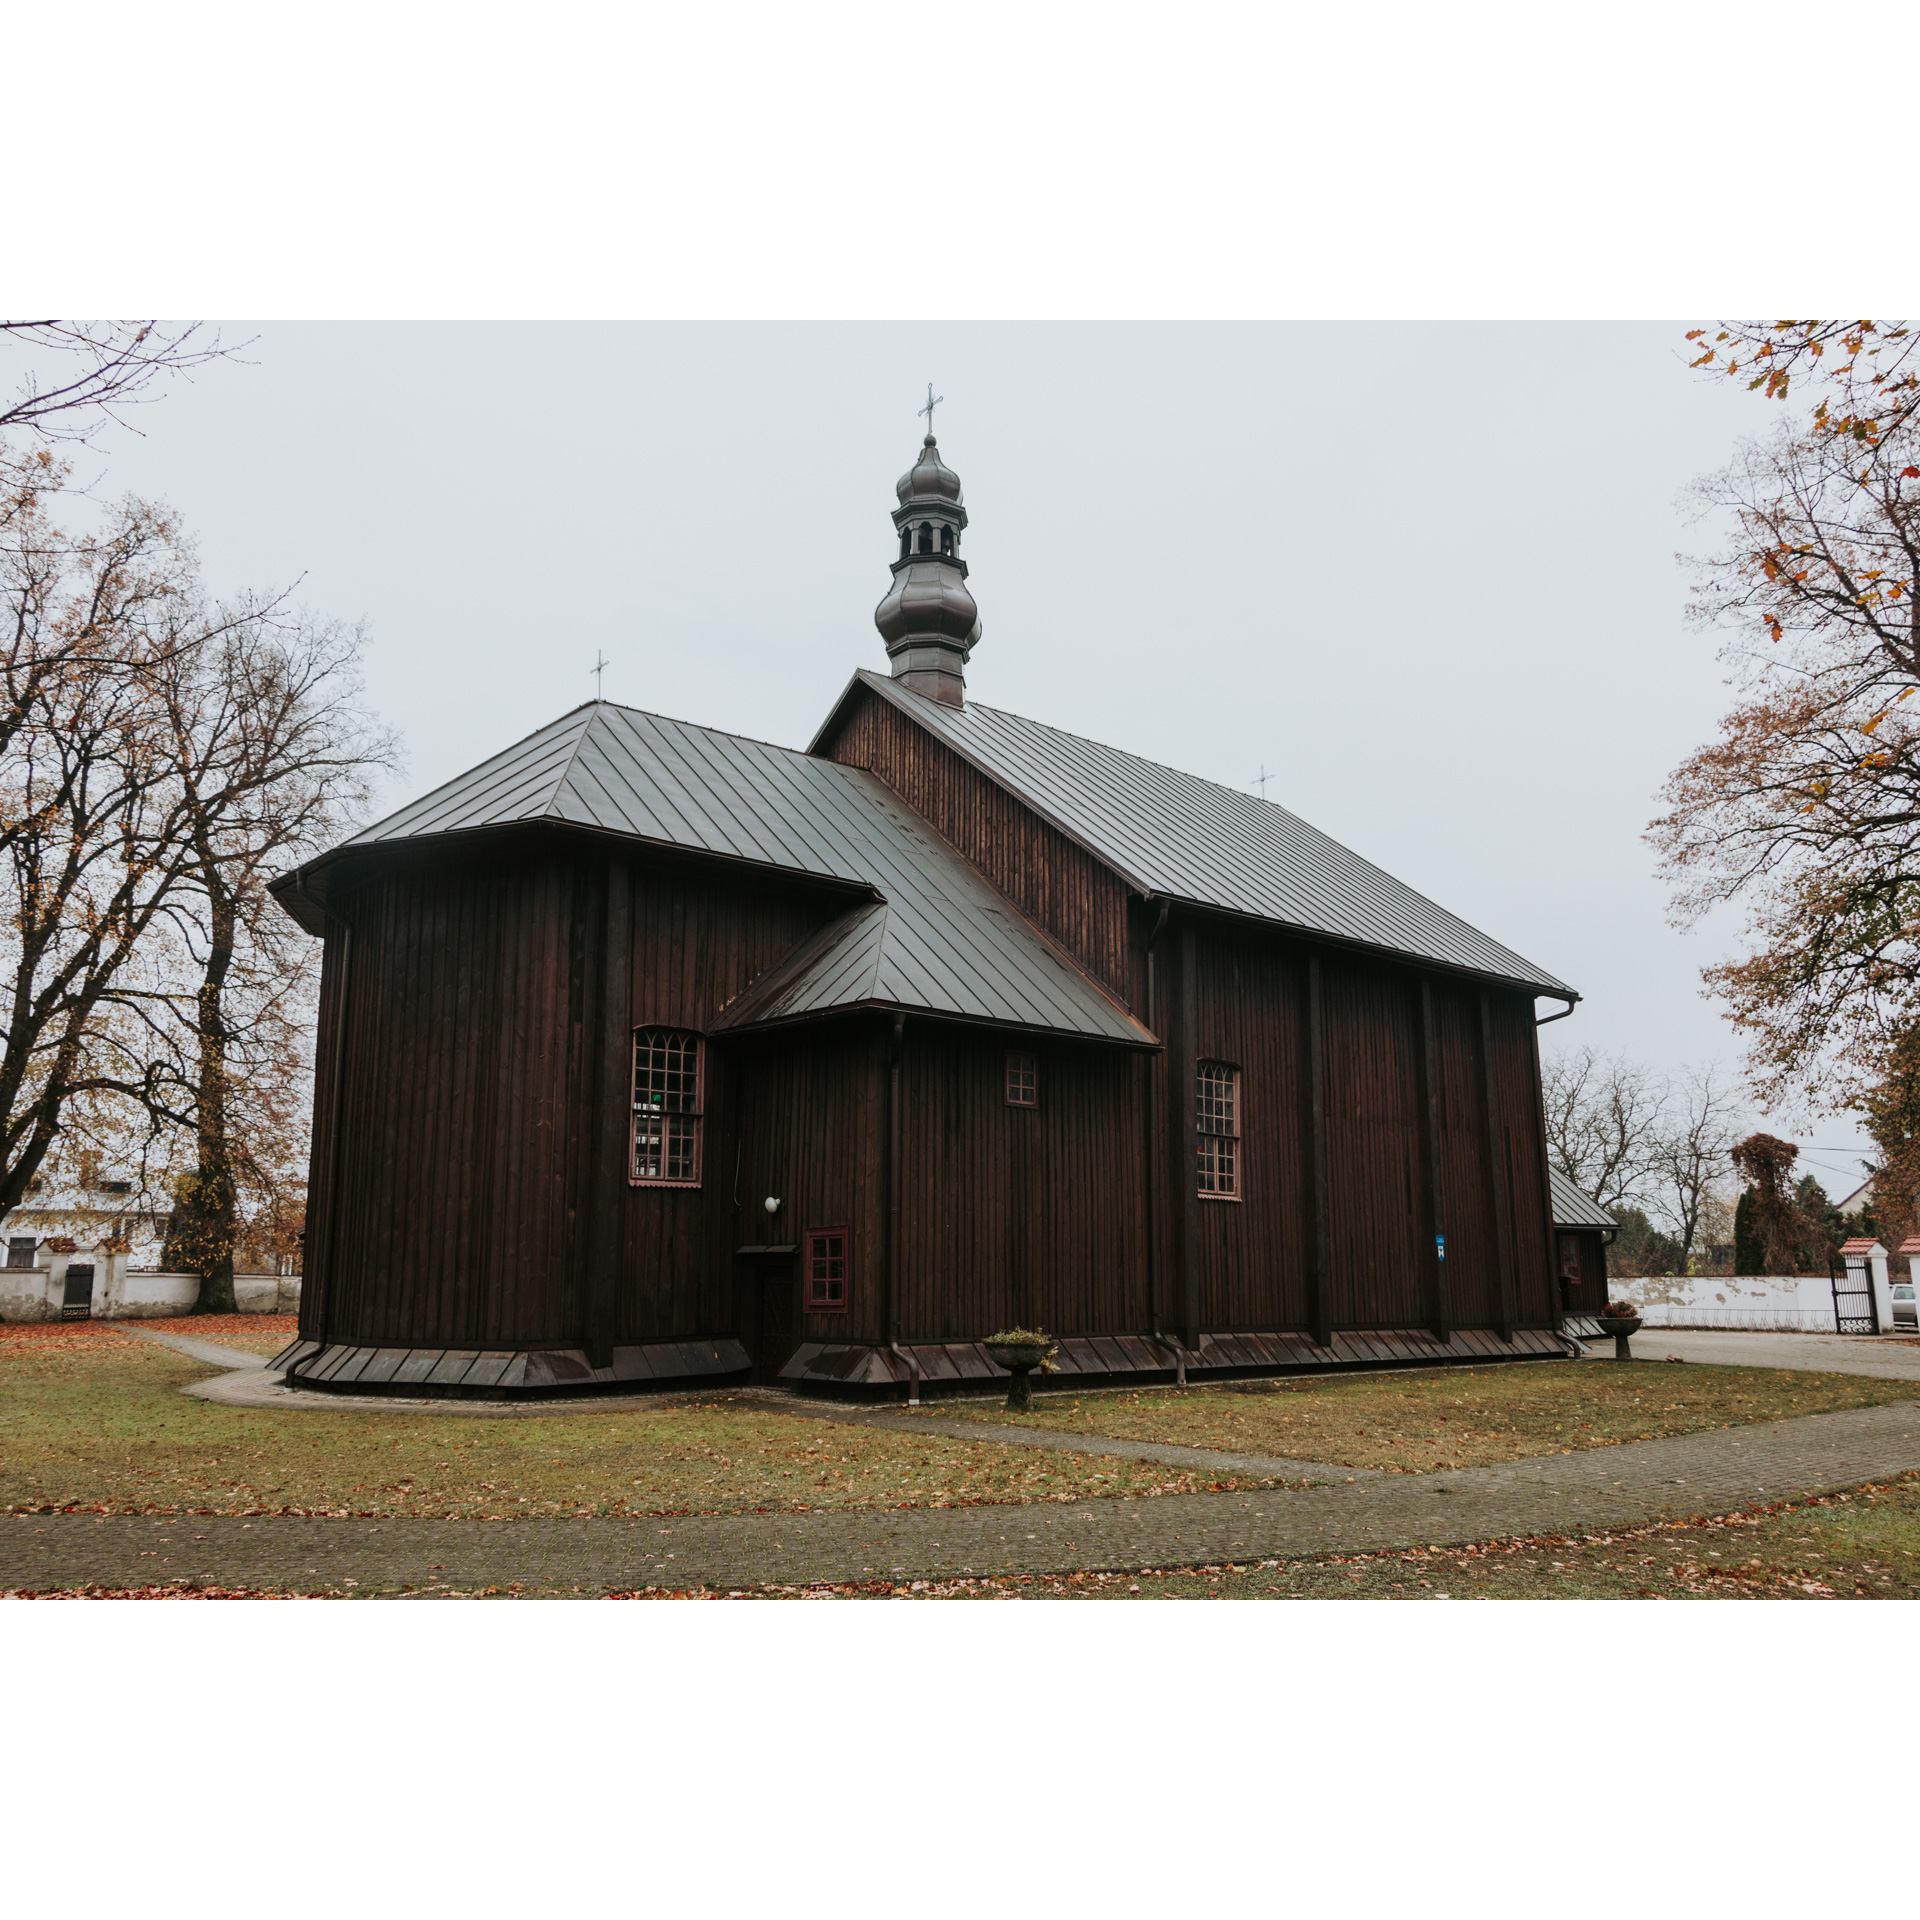 Ciemnobrązowy, drewniany kościół z blaszanym, spadzistym dachem i krzyżem na szczycie wieżyczki